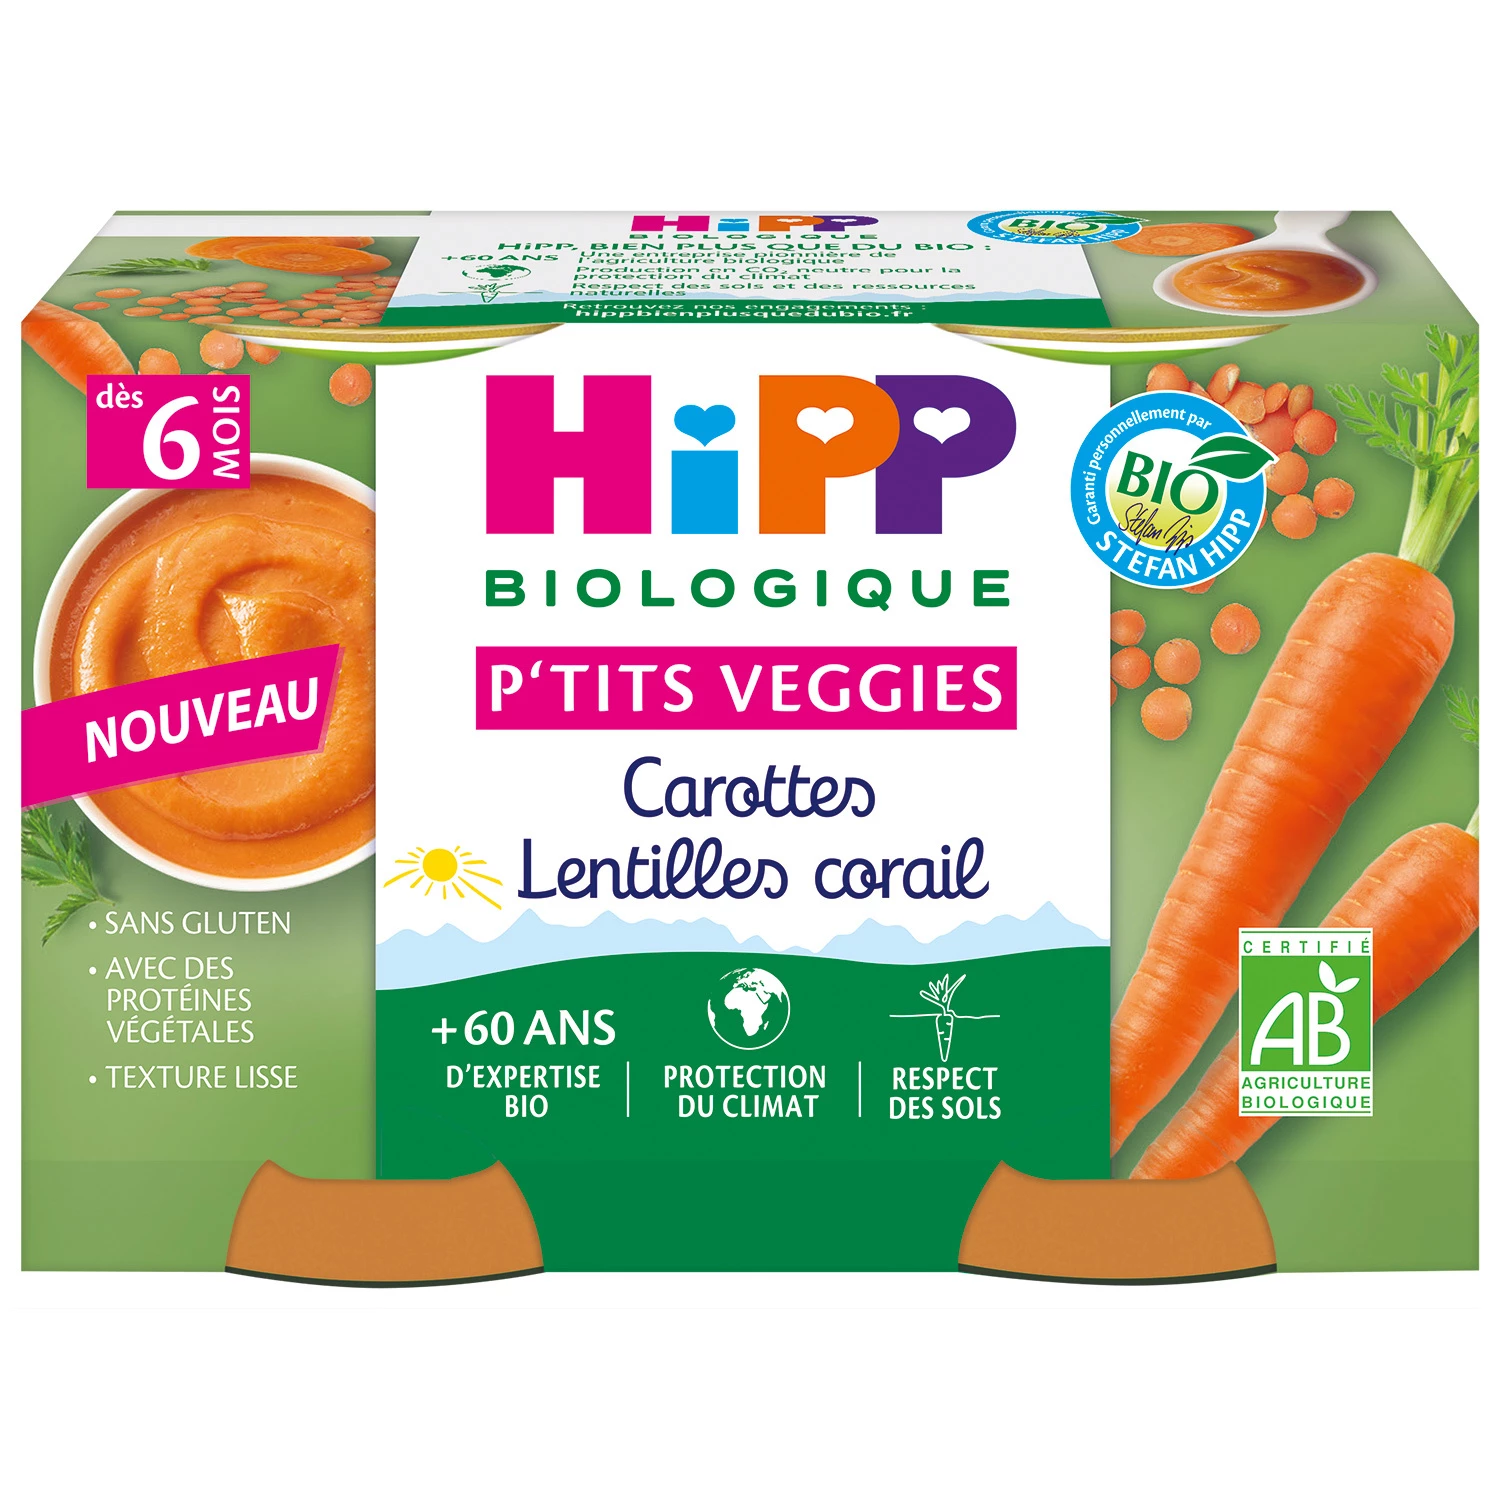 6 महीने से जैविक सब्जियों गाजर मूंगा दाल के छोटे जार, 2x125 ग्राम, HIPP BioLOGIQUE